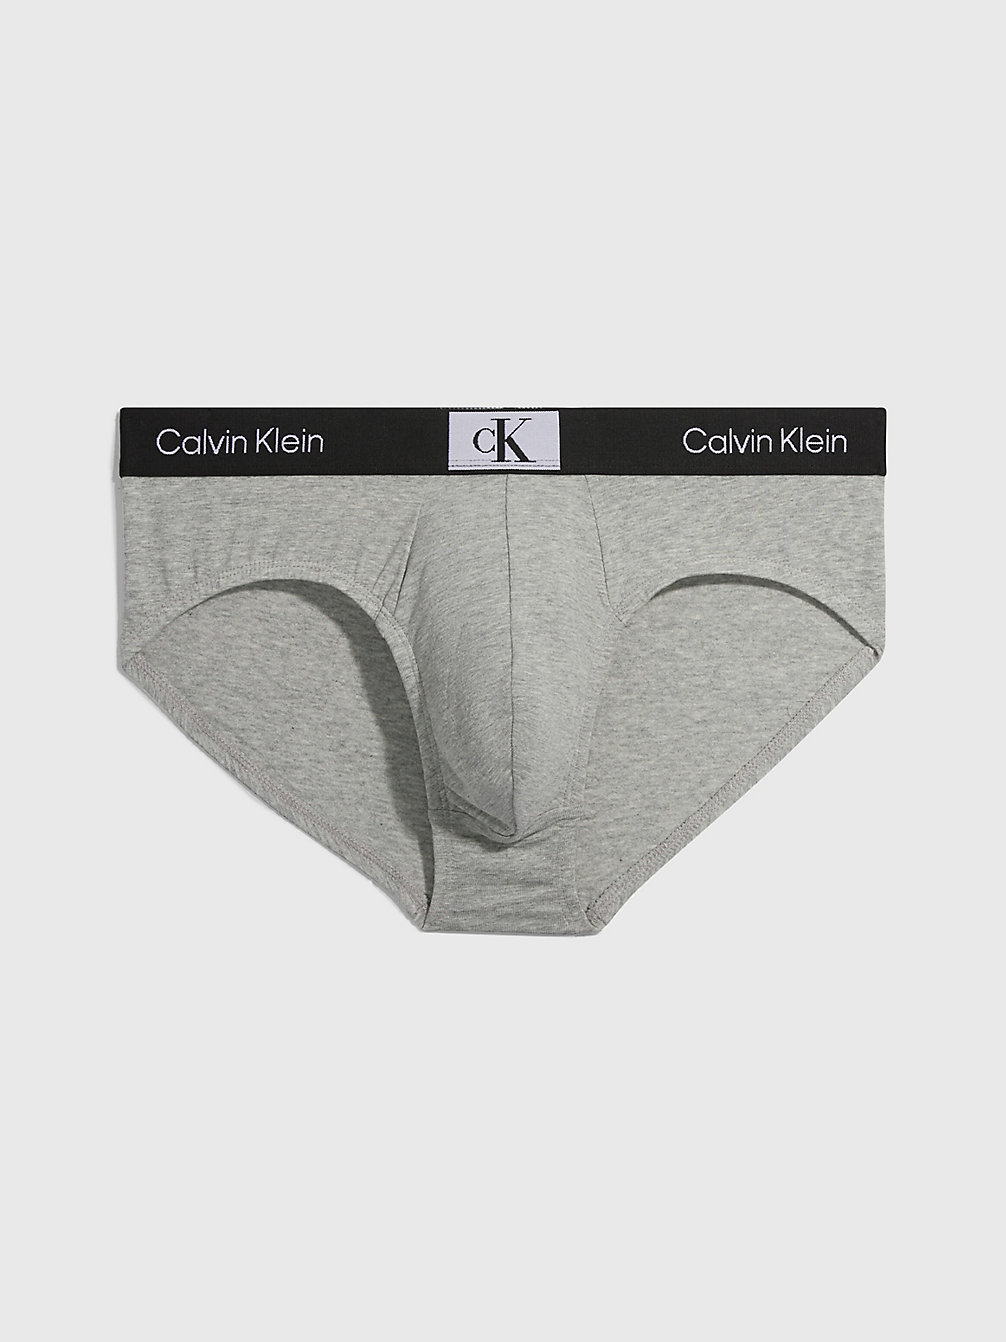 GREY HEATHER Briefs - Ck96 undefined men Calvin Klein